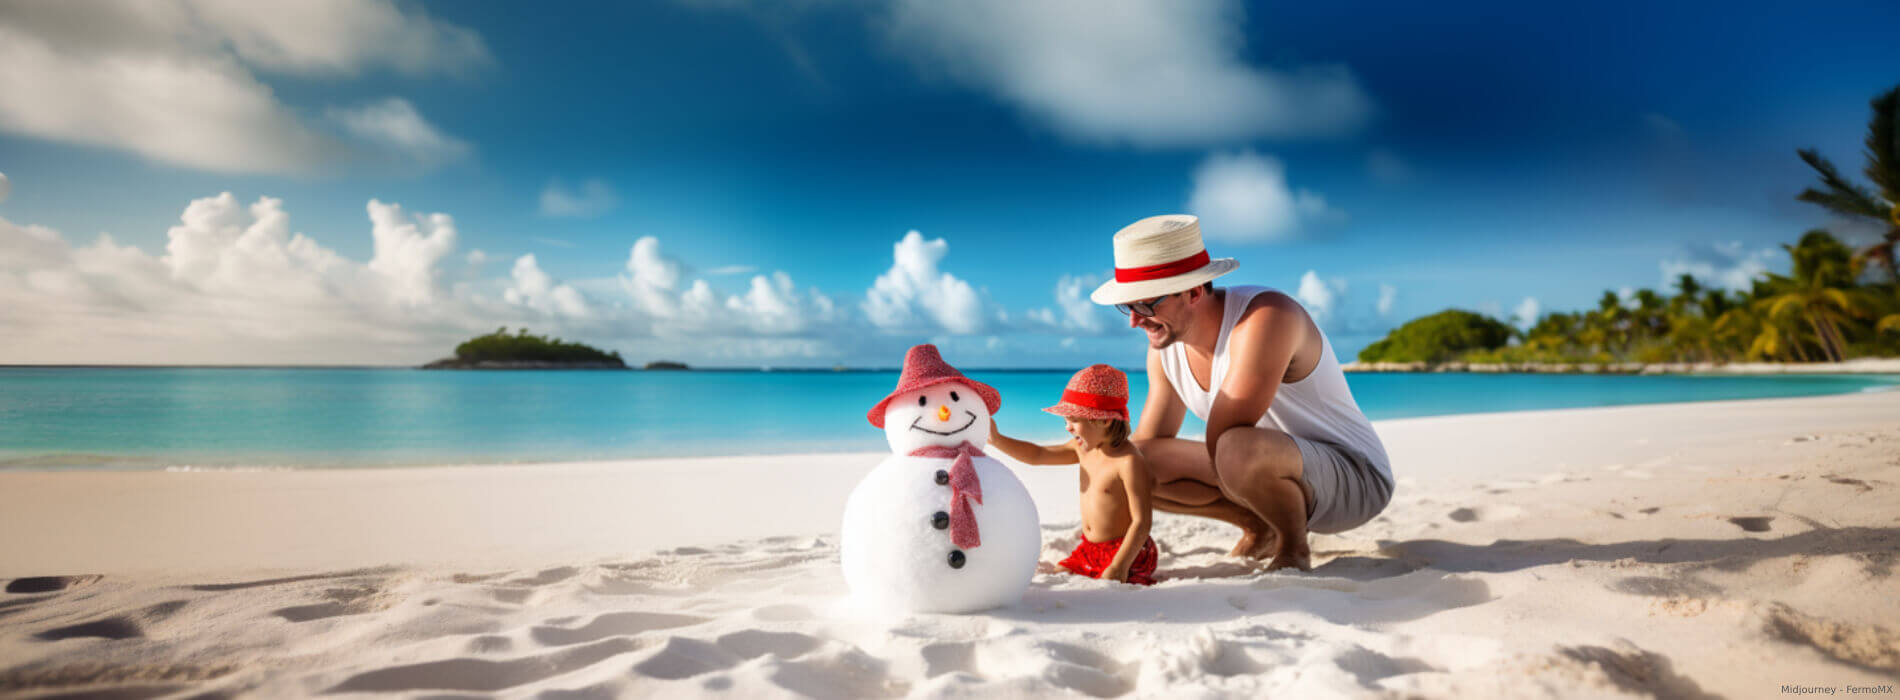 Preparate para vivir la navidad en cancun encabezado